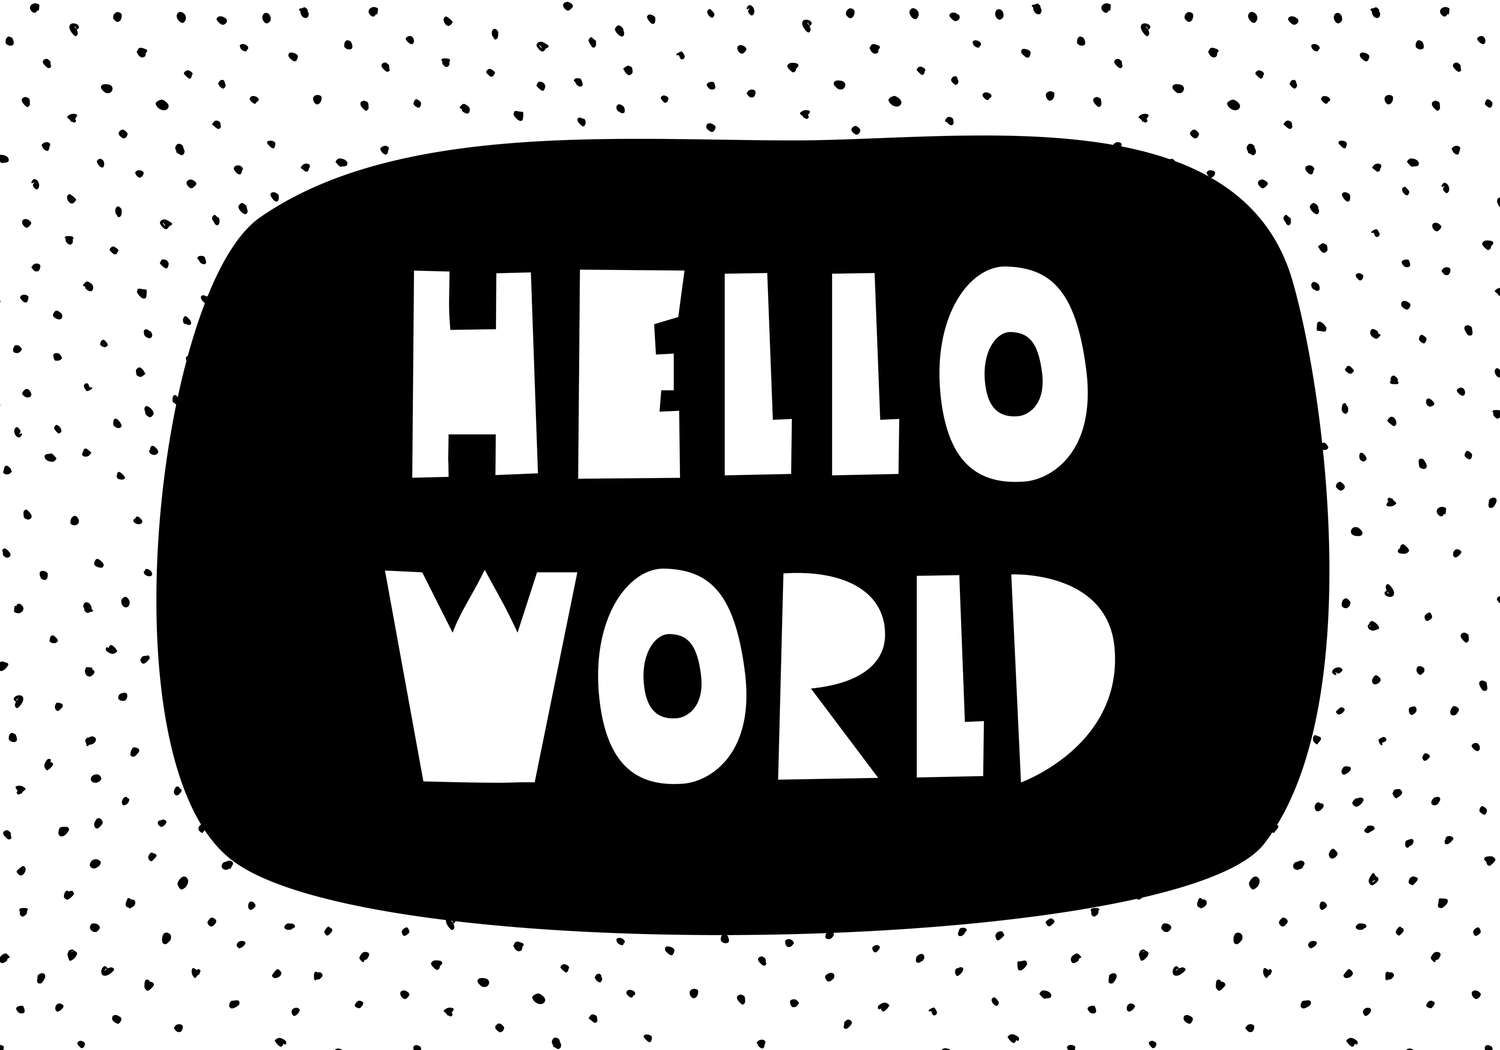             Digital behang voor kinderkamer met opschrift "Hello World" - Glad & licht glanzend vlies
        